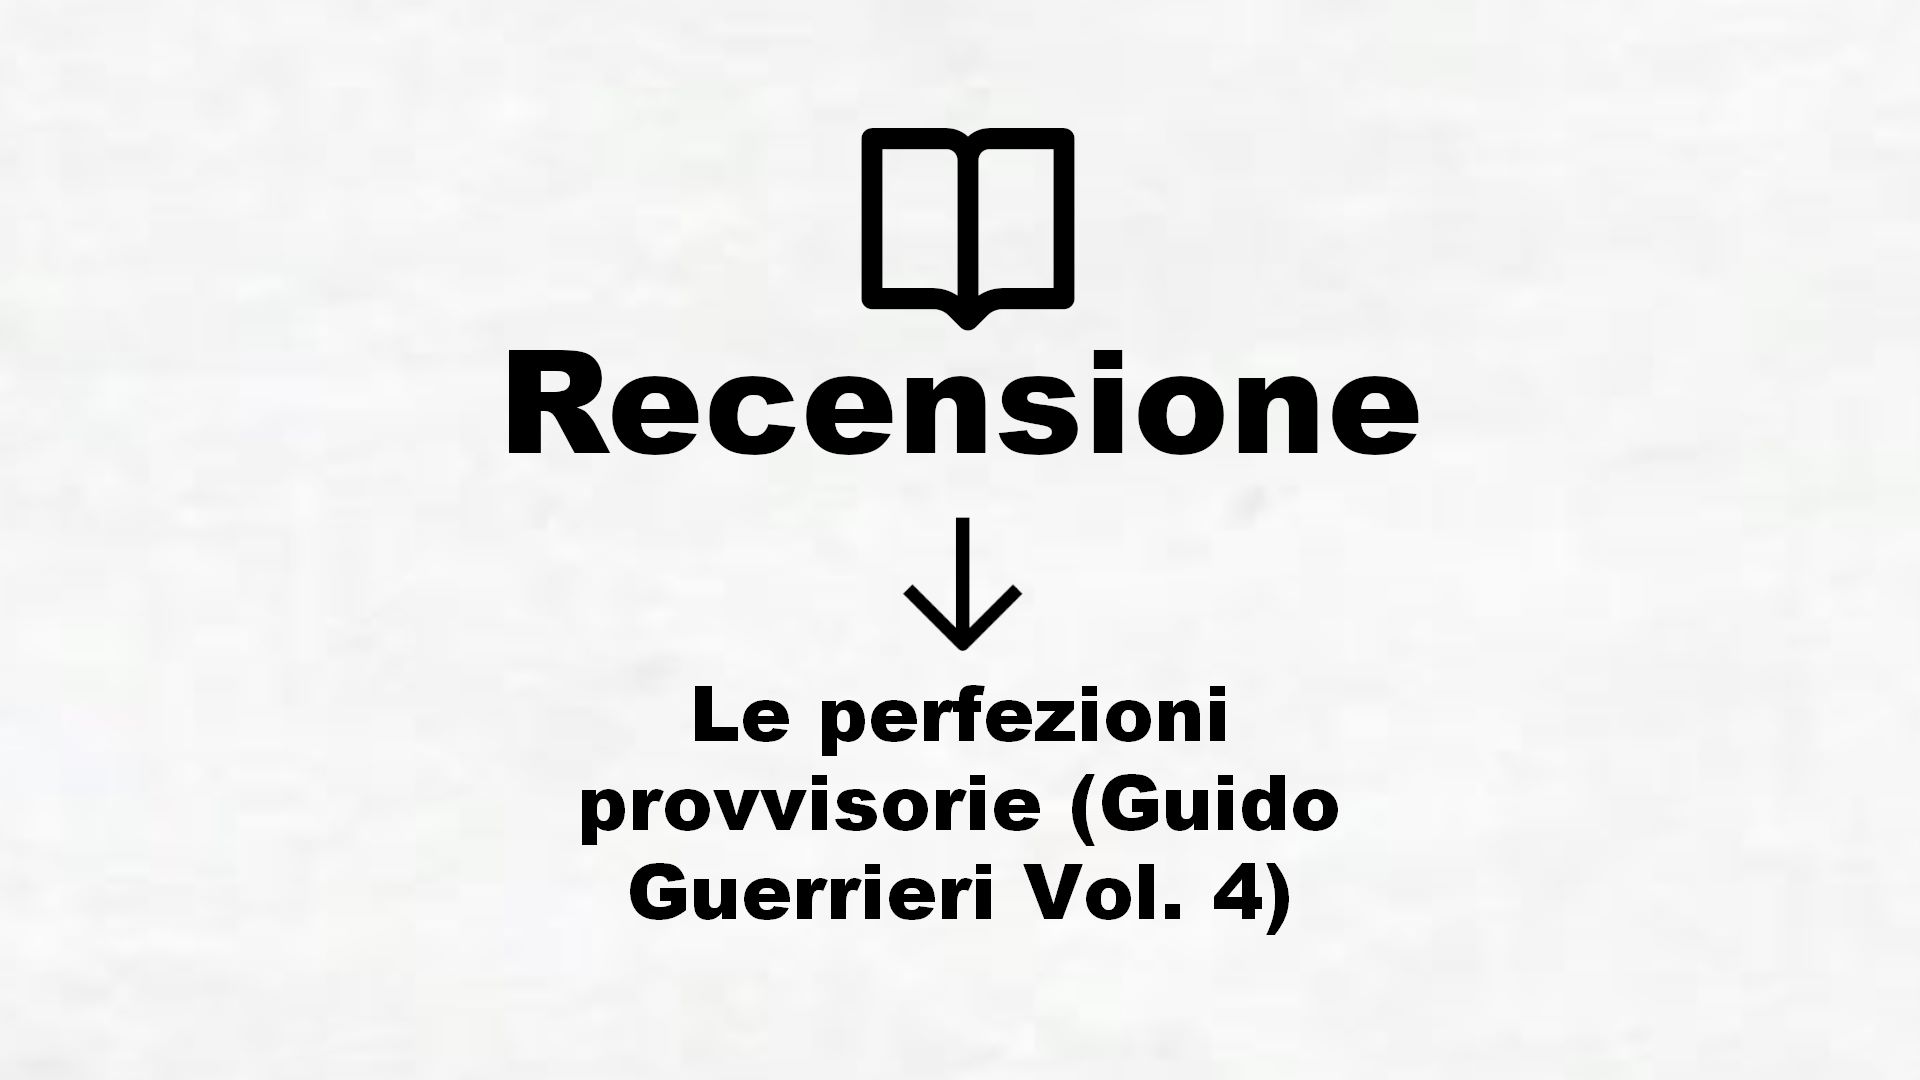 Le perfezioni provvisorie (Guido Guerrieri Vol. 4) – Recensione Libro